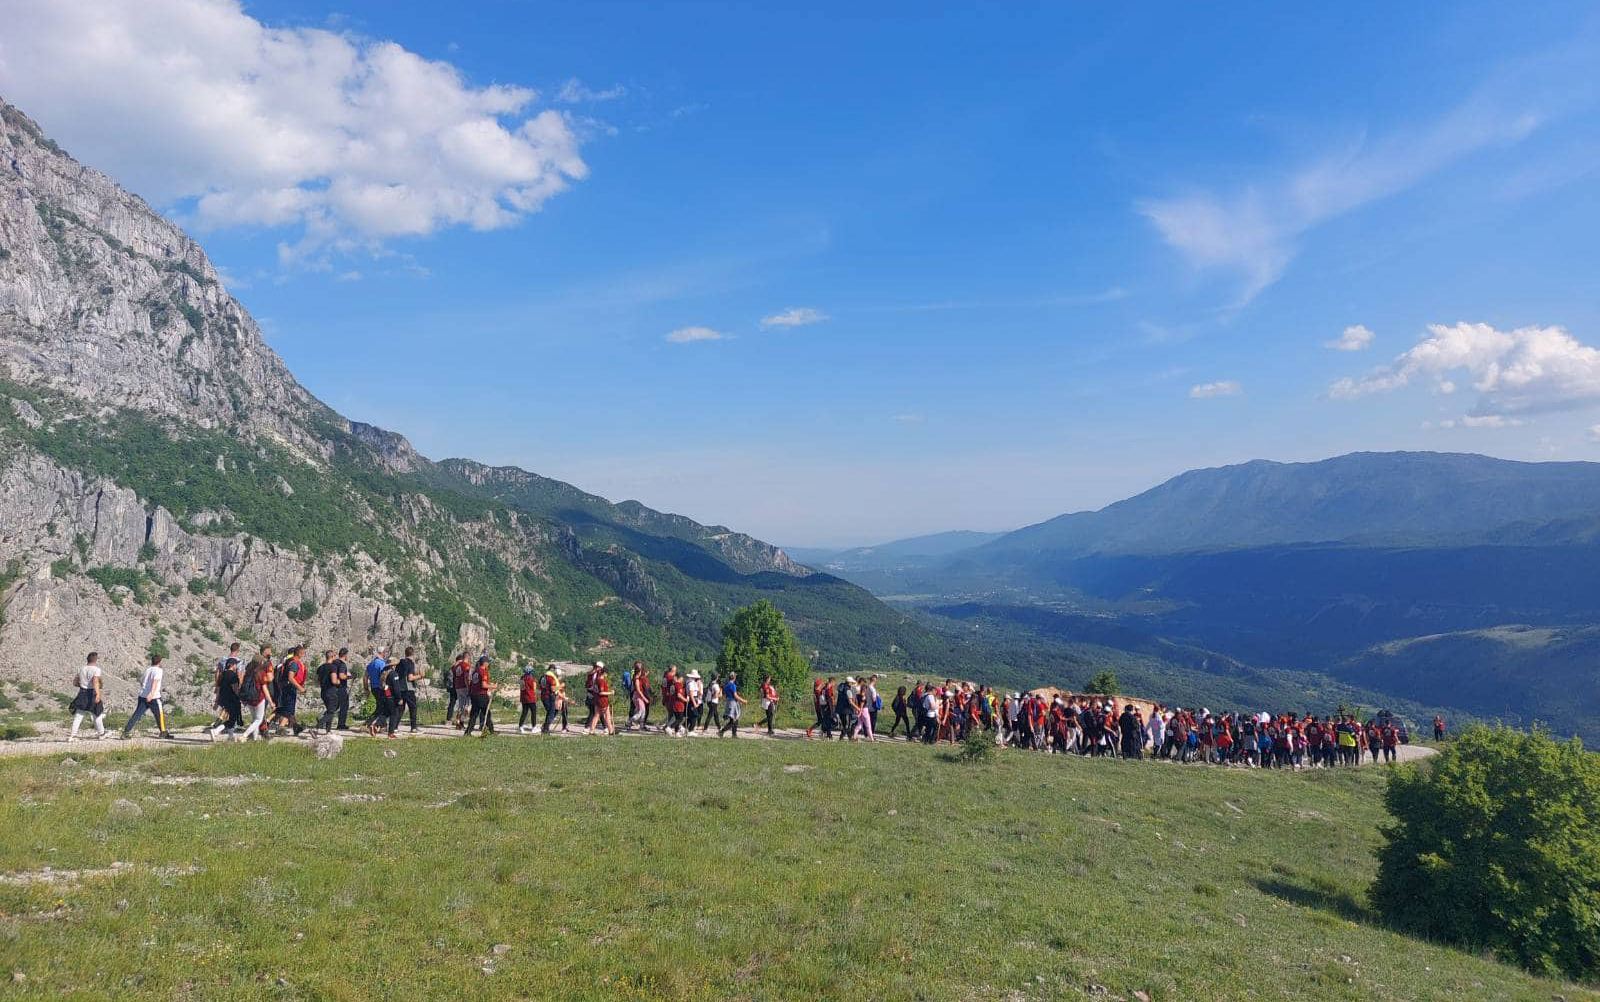 Des centaines de pèlerins se sont rendus à pied au monastère d’ostrog, au monténégro, pour la fête de saint basile